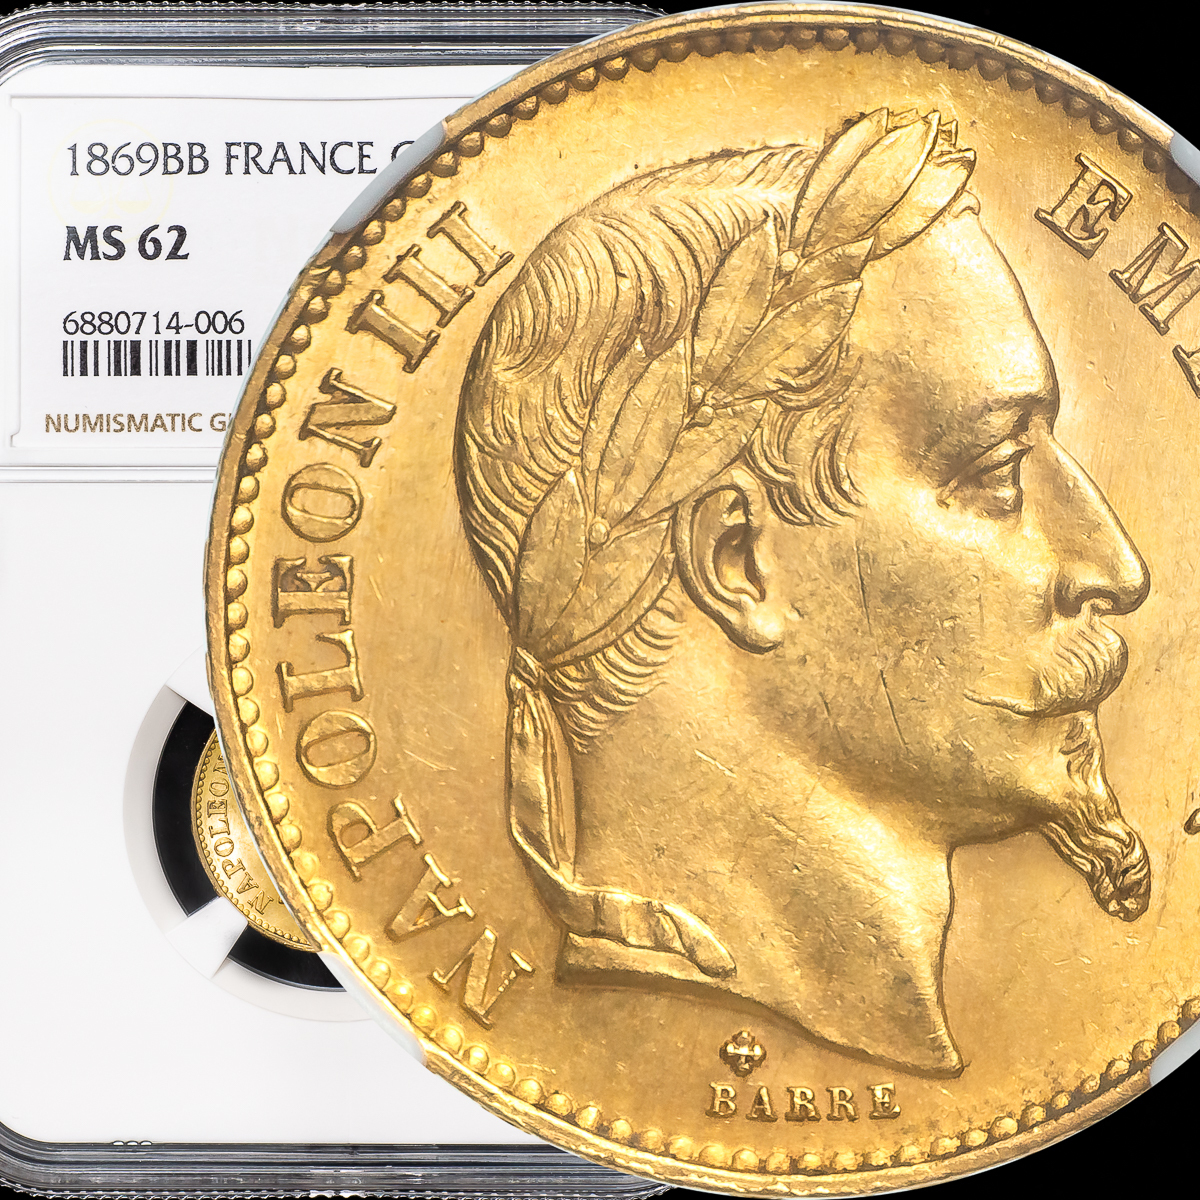 【有冠 高鑑定 MS62】1869 BB フランス第二帝政 ナポレオン3世 20フラン金貨 NGC/アンティーク モダン コイン_画像1